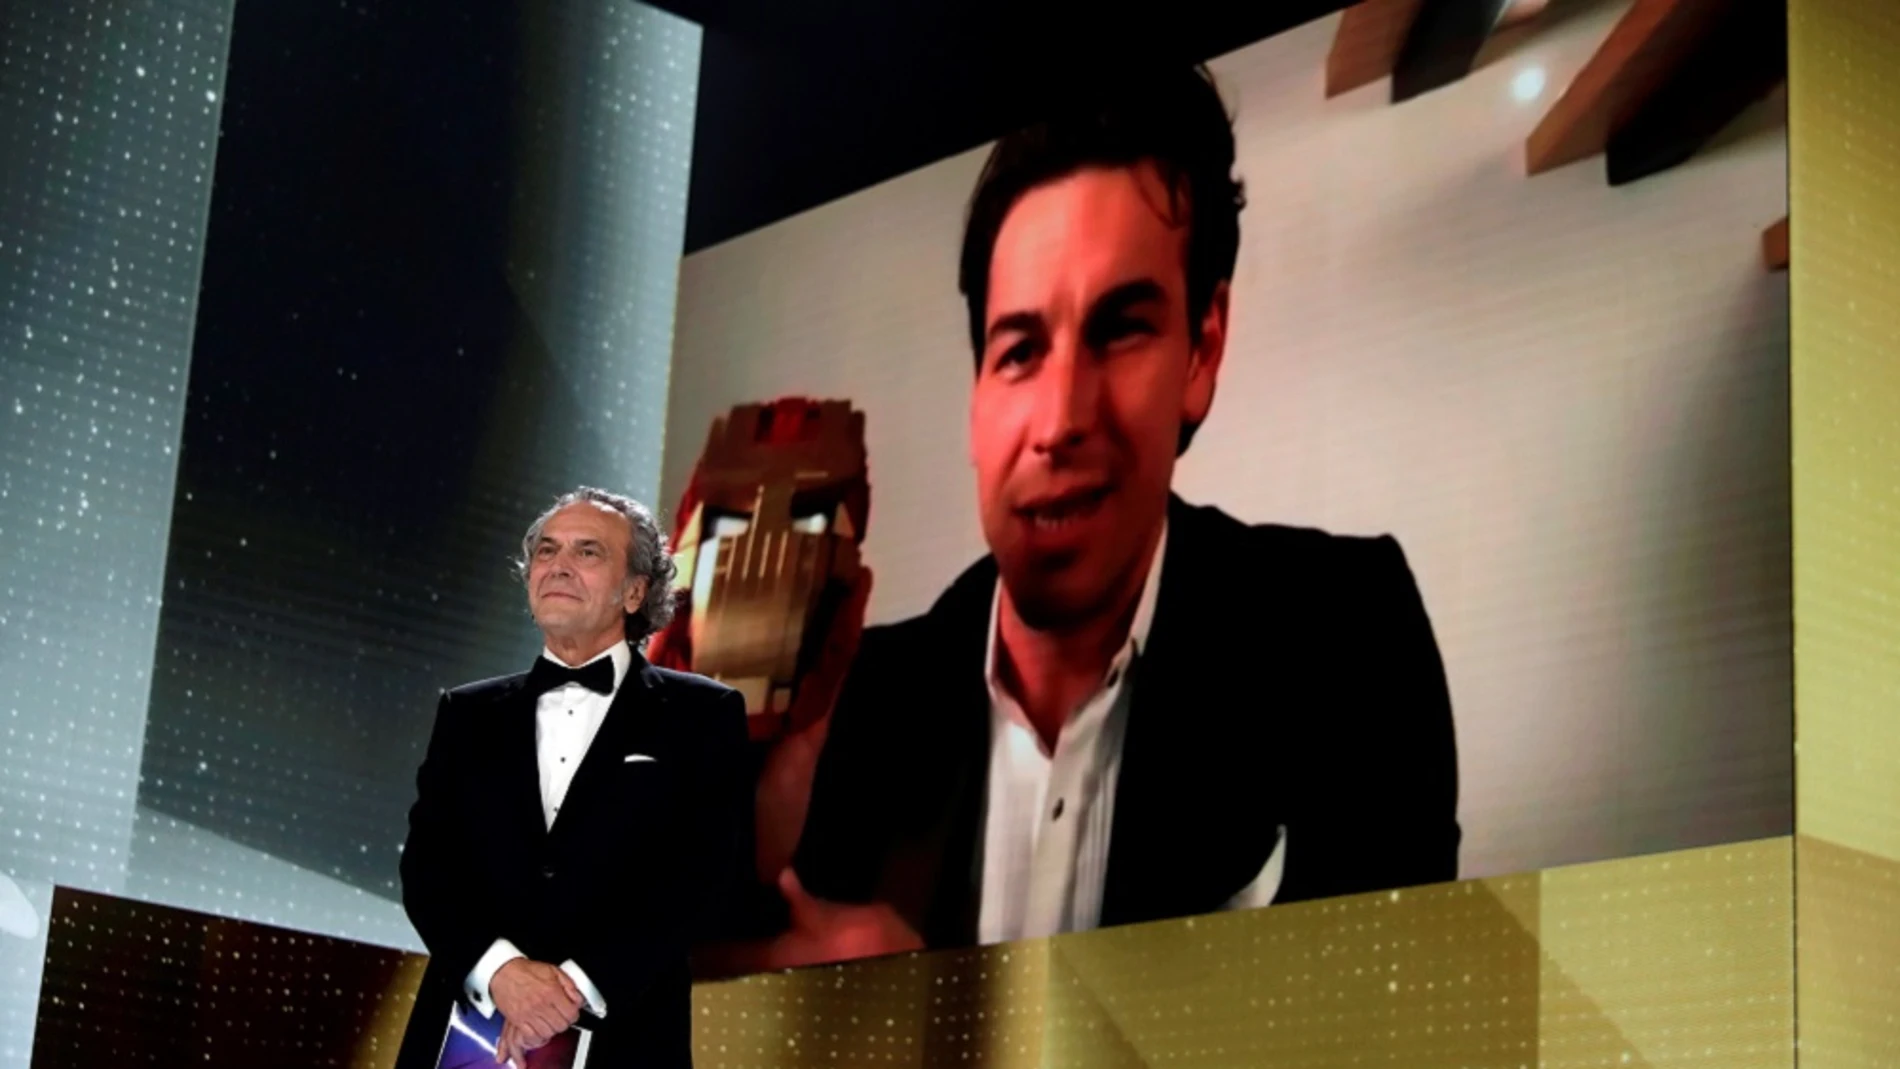 Momento en el Mario Casas recibió el Goya a Mejor Actor